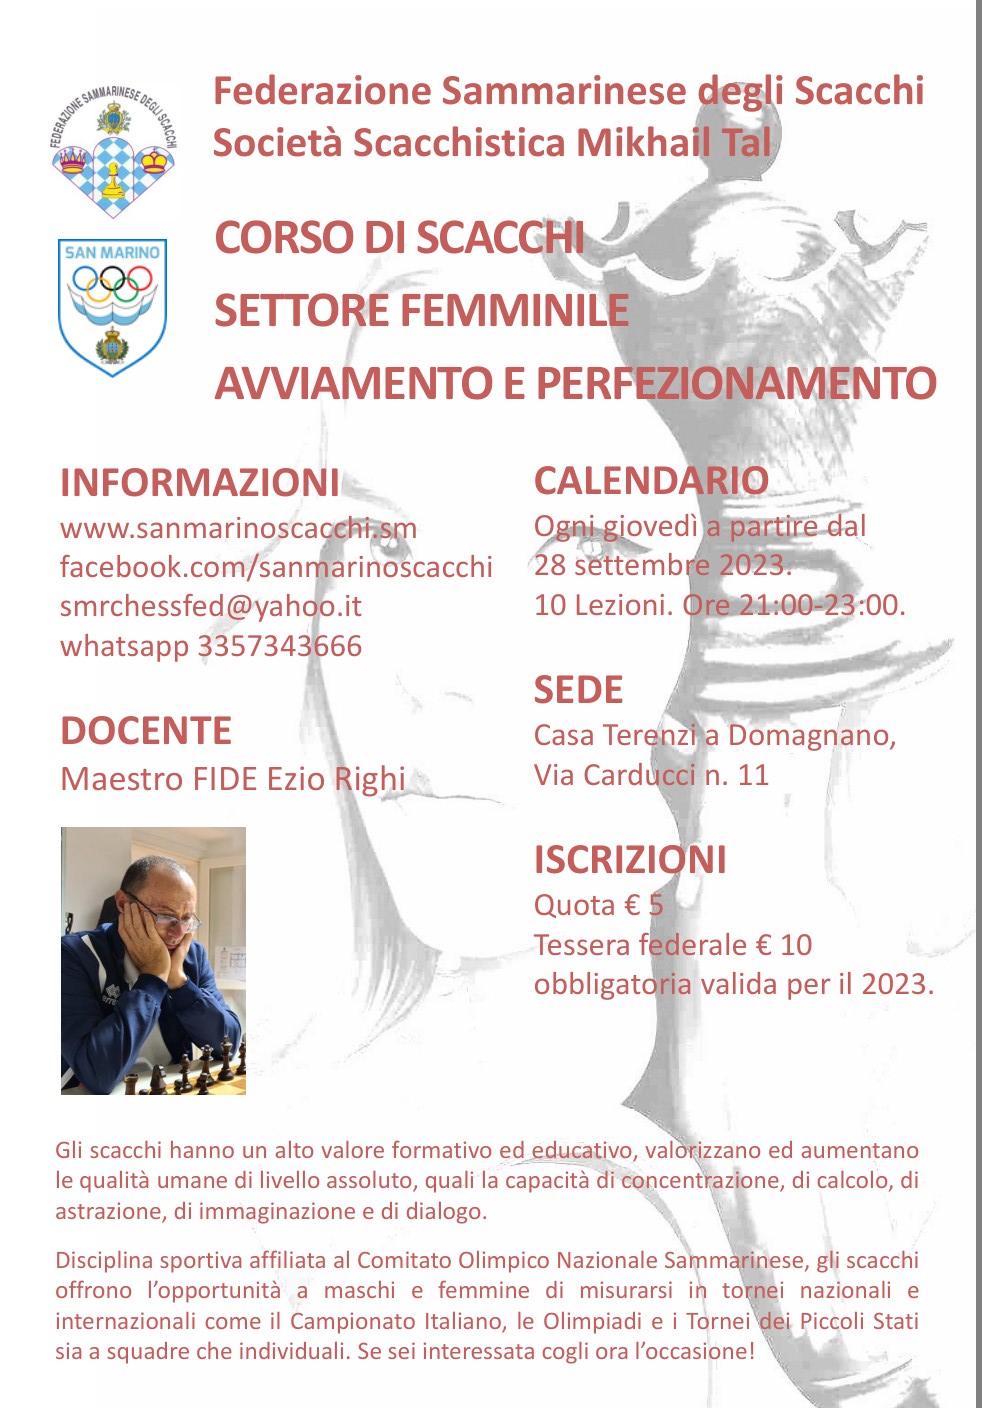 Corso di Scacchi dedicato al Settore Femminile a partire dal 28 settembre 2023